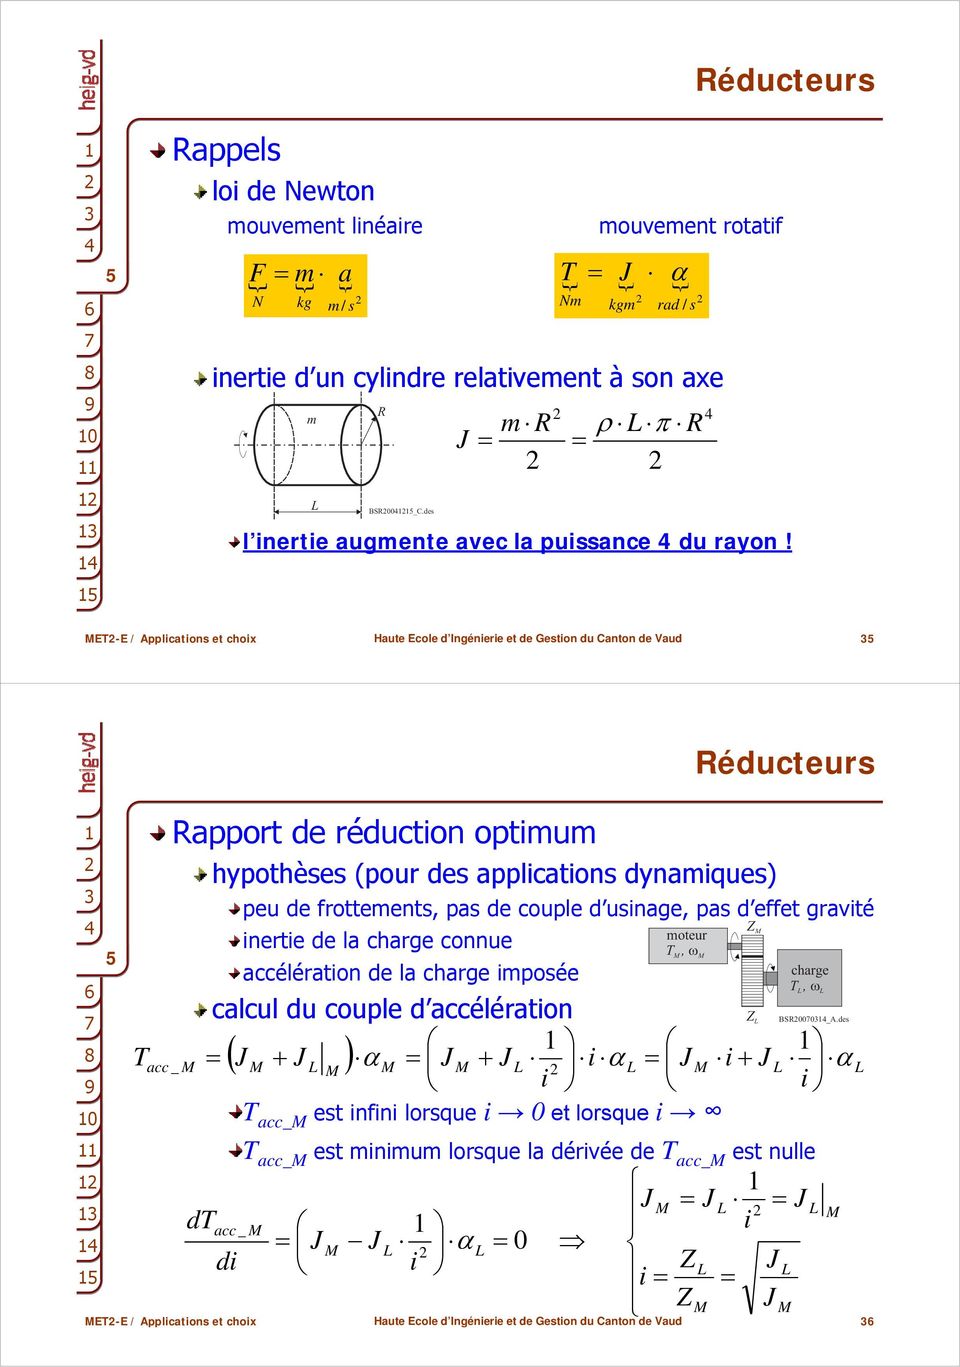 Nm kgm rad / s ρ π R = E-E / Applications et choix Réducteurs 0 acc _ E-E / Applications et choix Rapport de réduction optimum hypothèses (pour des applications dynamiques) peu de frottements,